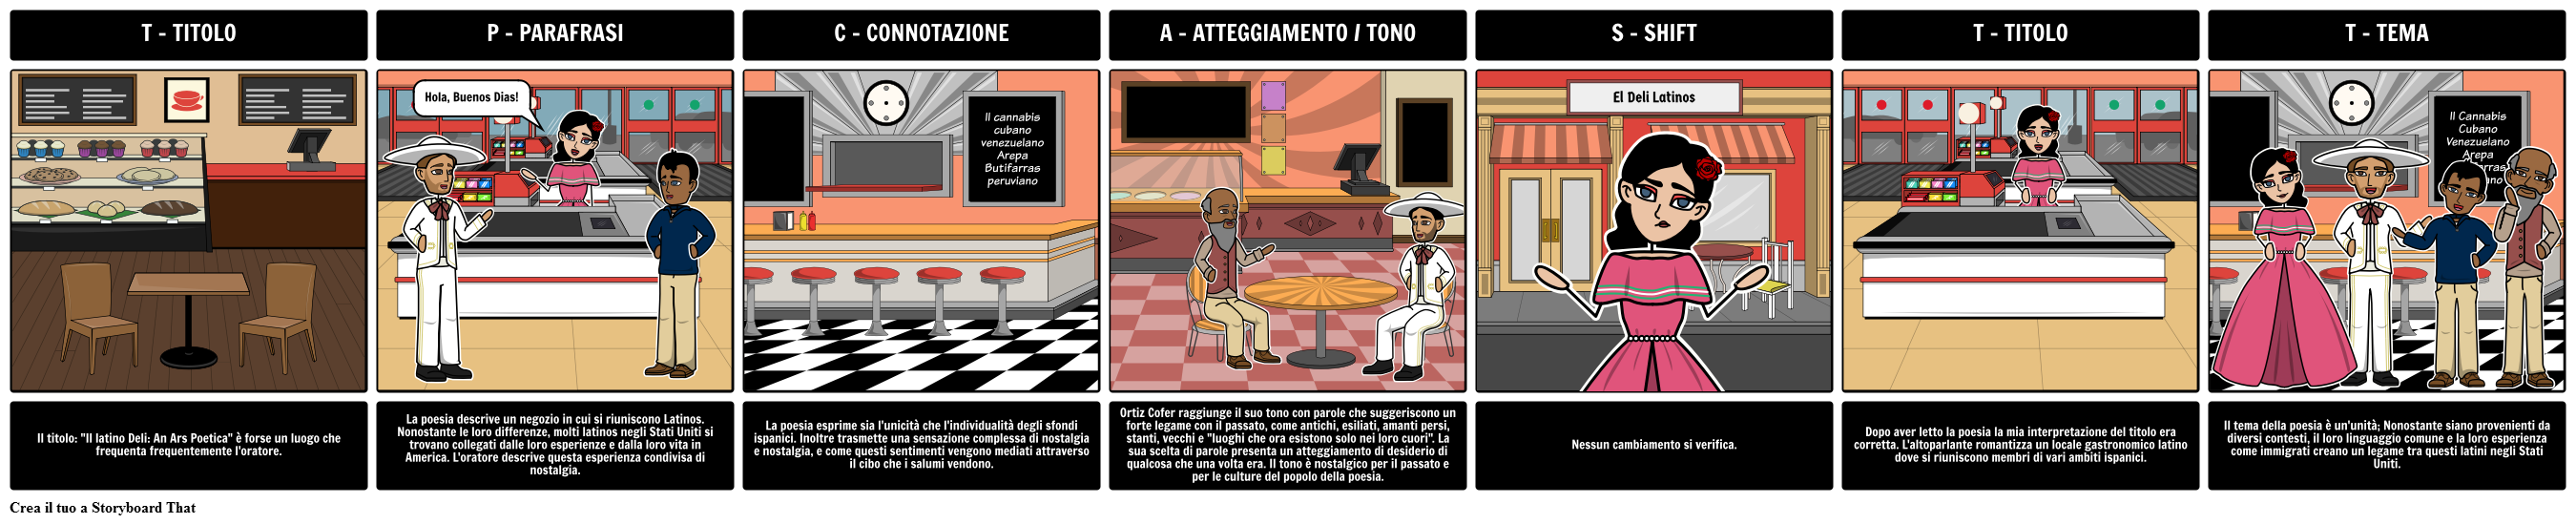 "Il latino Deli: An Ars Poetica" - TP-CASTT